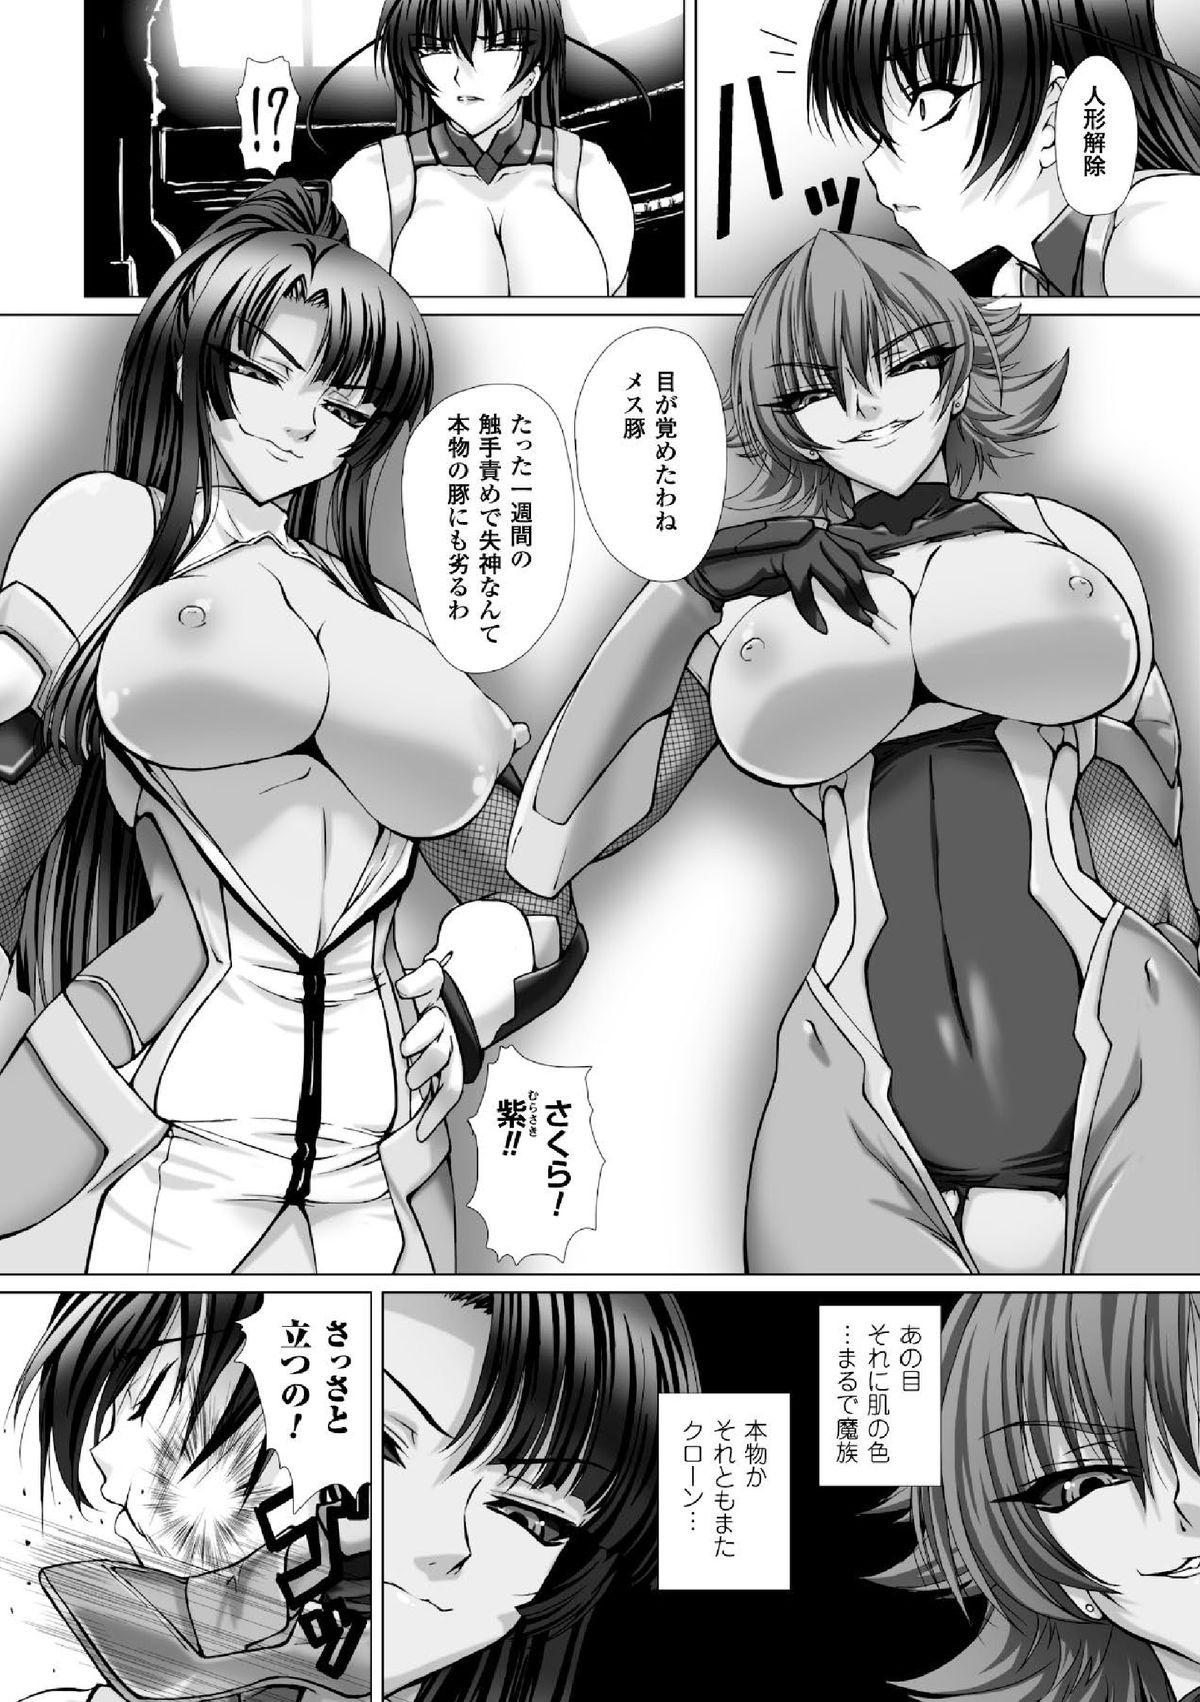 Skirt Megami Crisis 16 - Taimanin asagi Kangoku senkan Koutetsu no majo annerose Safado - Page 11